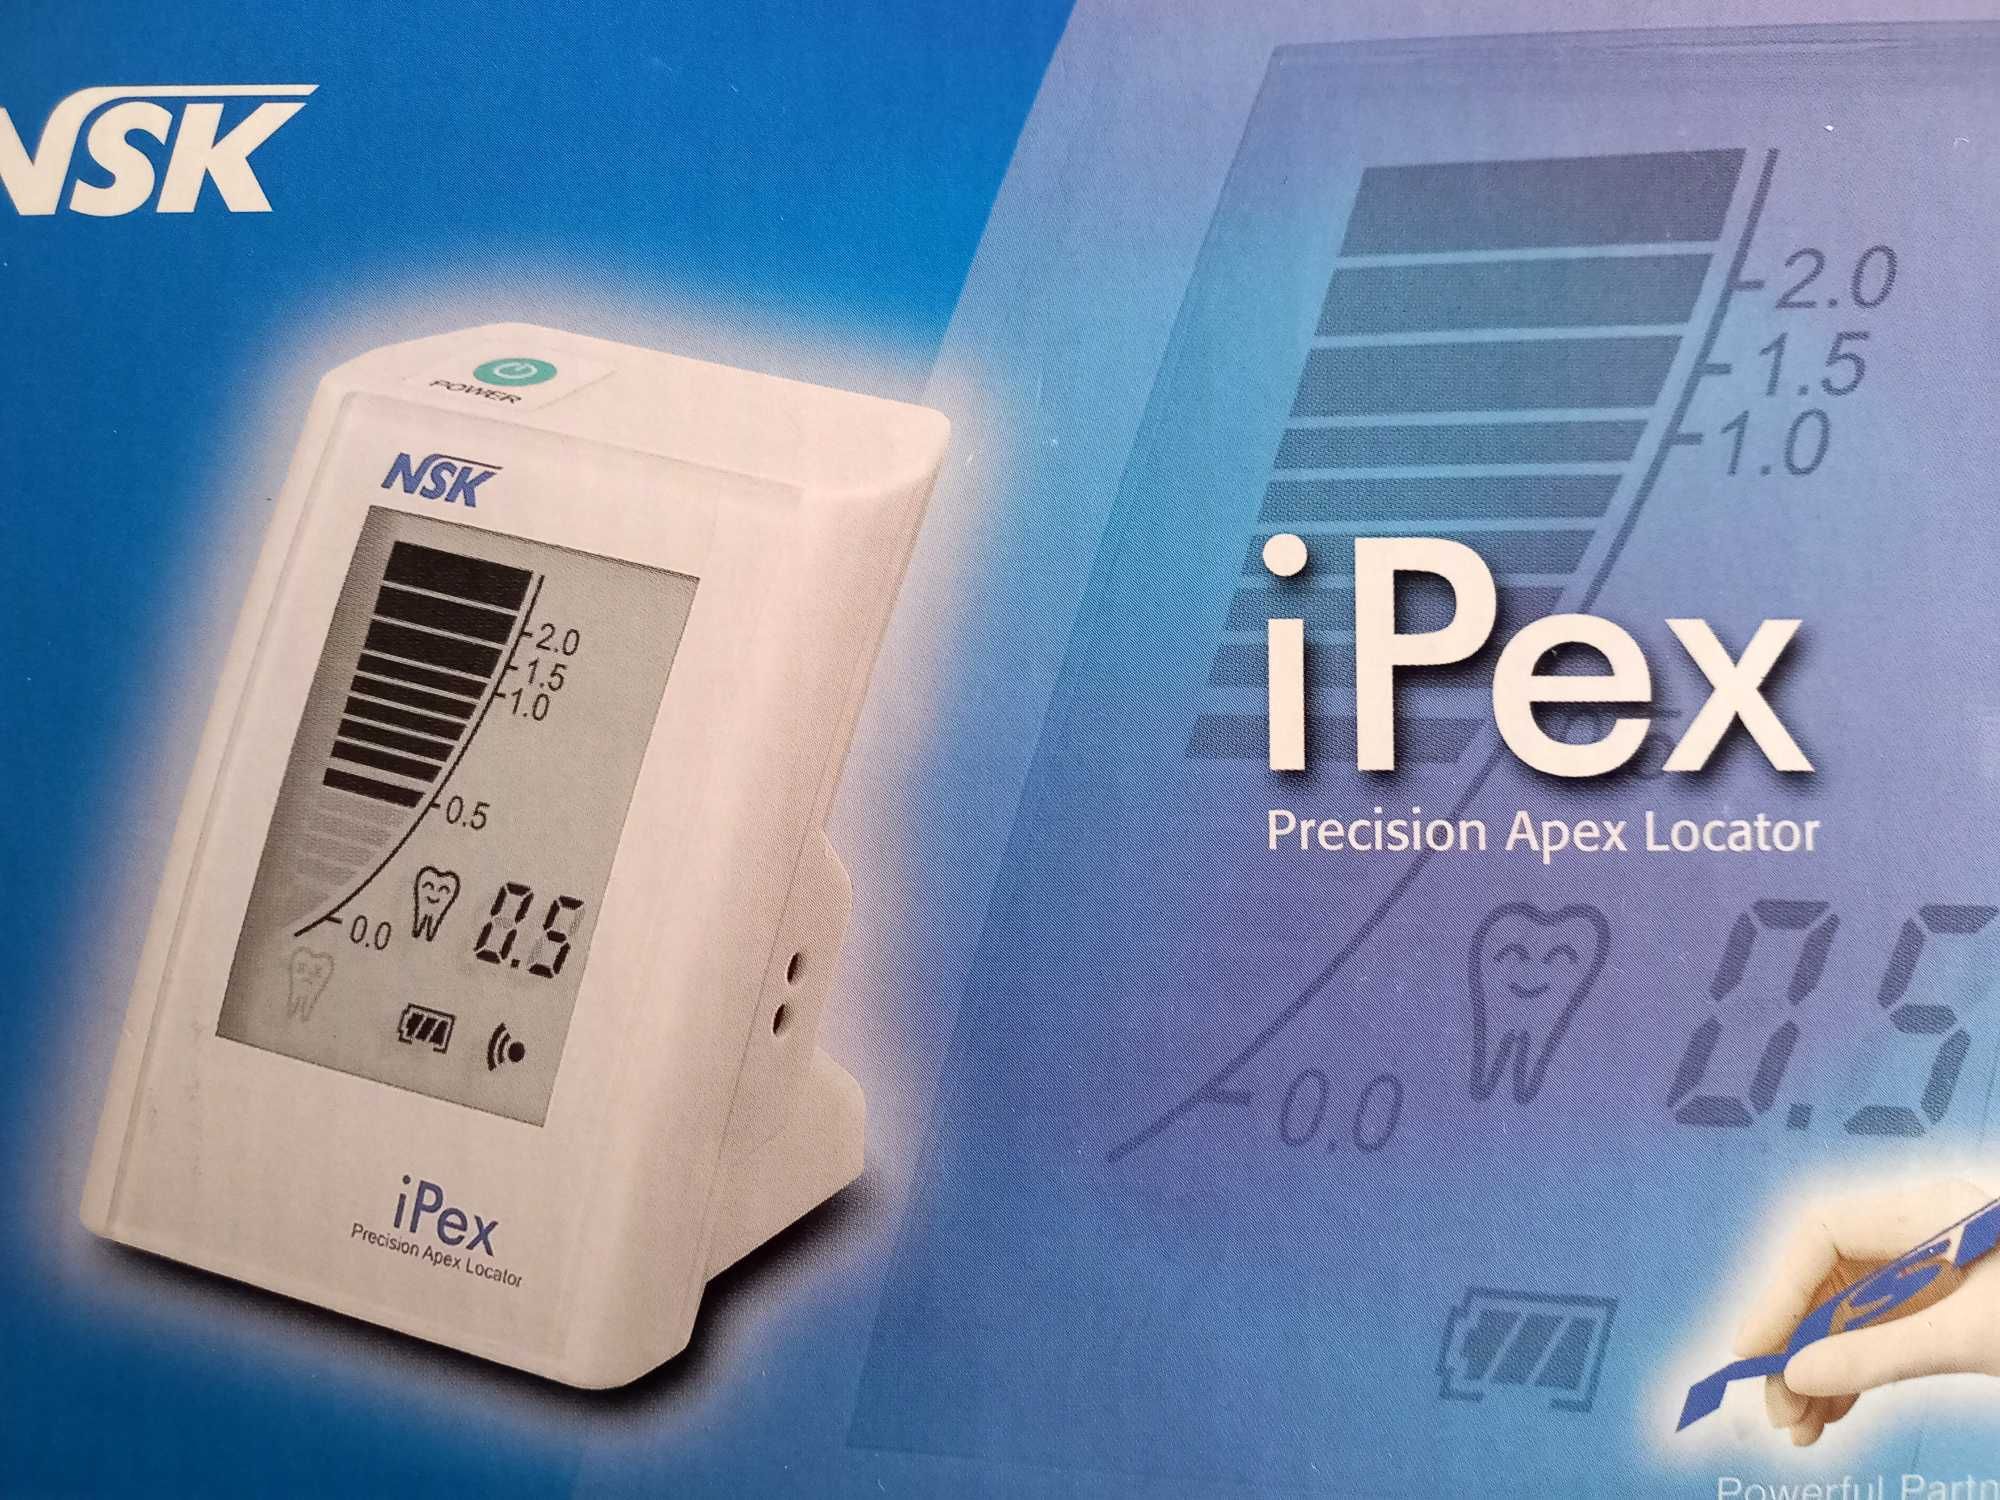 Endometr NSK iPex Made in Japan